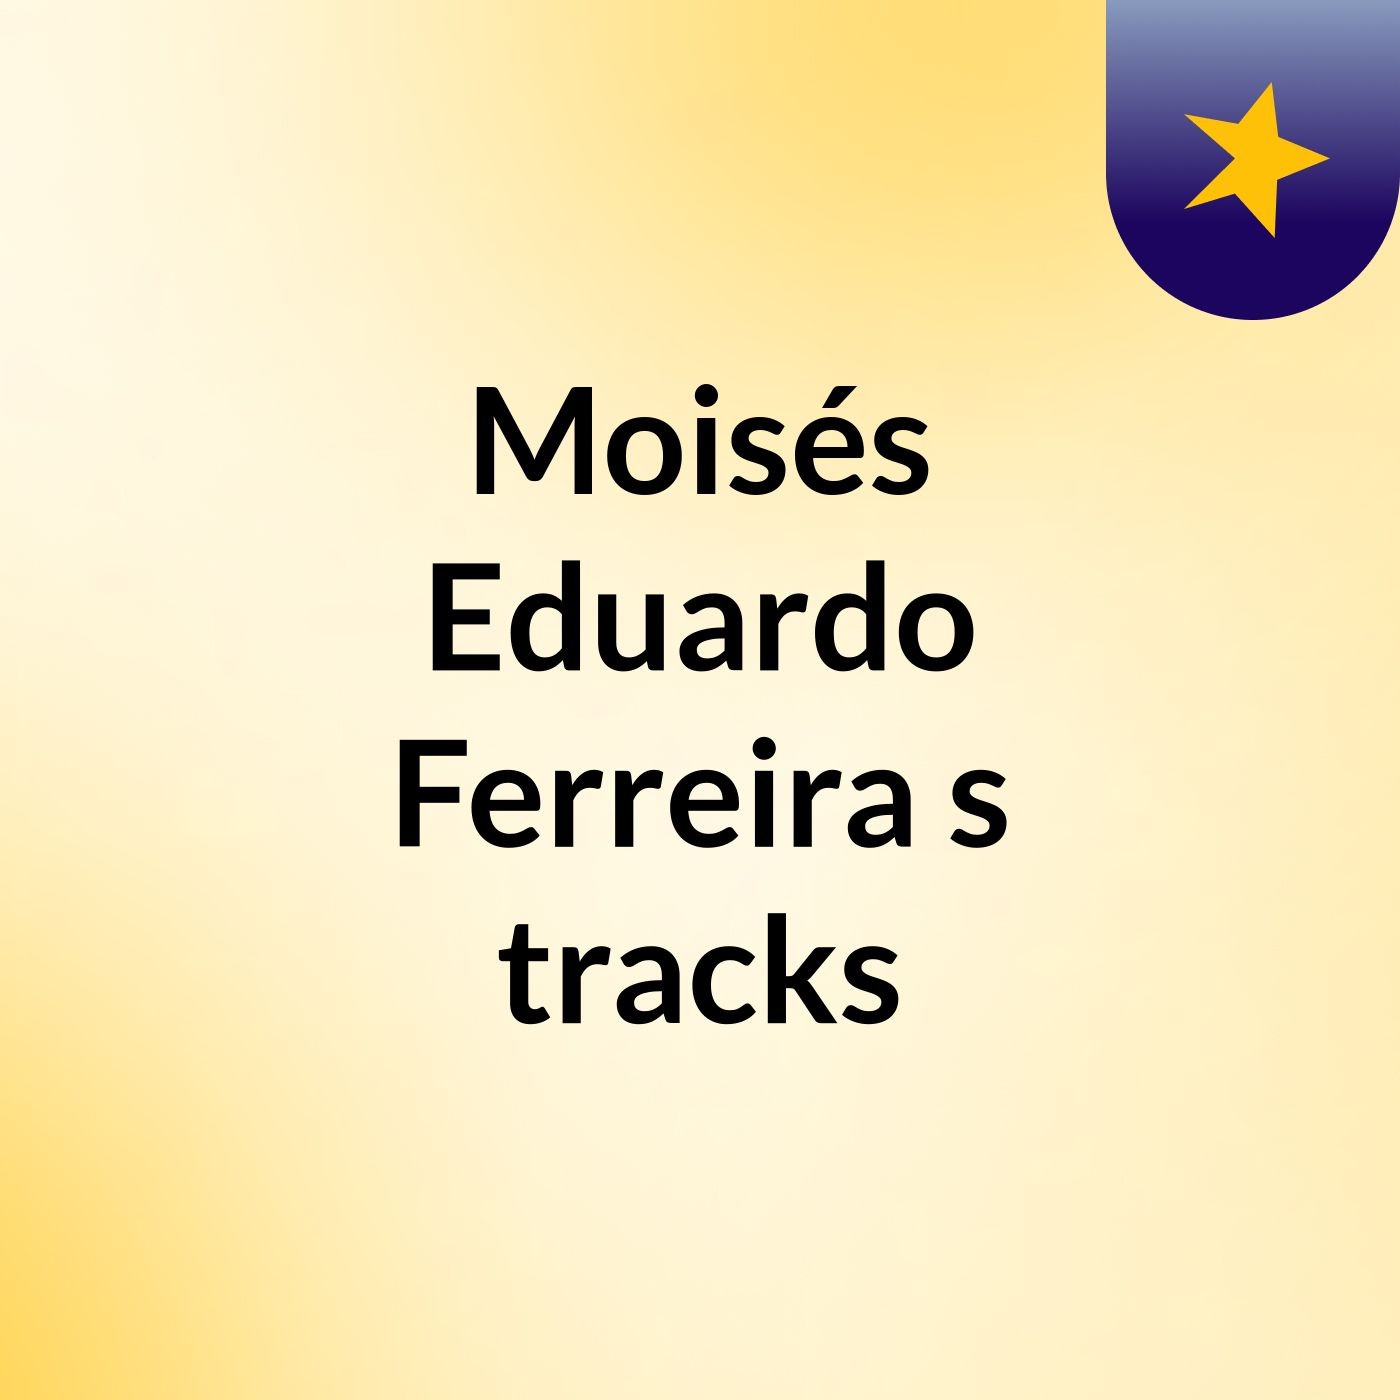 Moisés Eduardo Ferreira's tracks